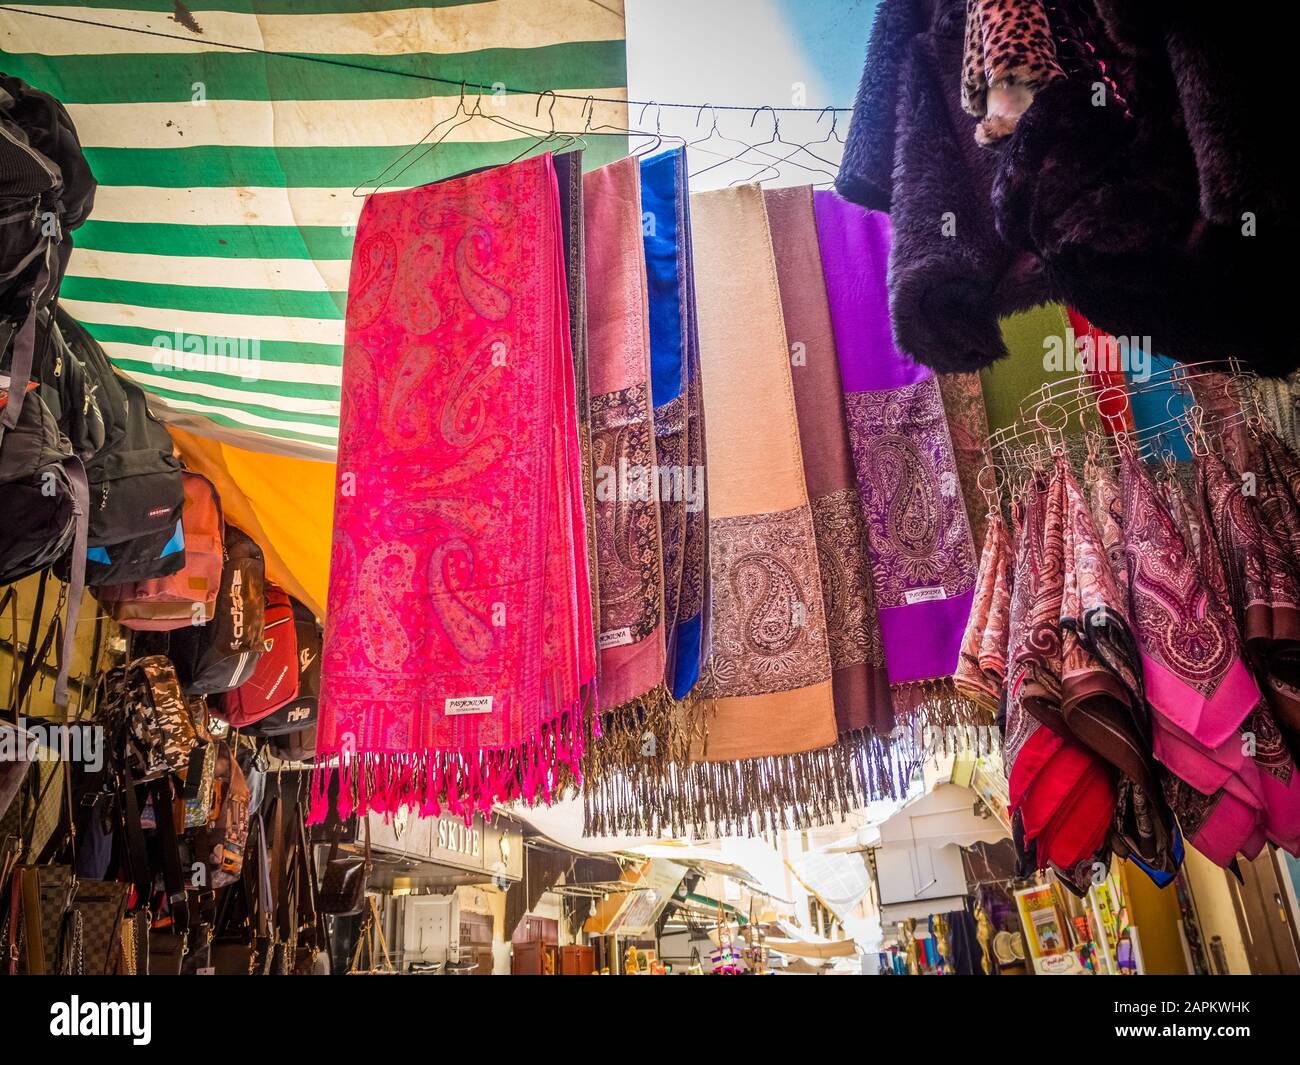 Foulards traditionnels marocains colorés et des châles à Fes, Maroc  également connu sous le nom de touareg shesh (turban). Des tissus faits à  la main. Fez Souk marché foulards Photo Stock -